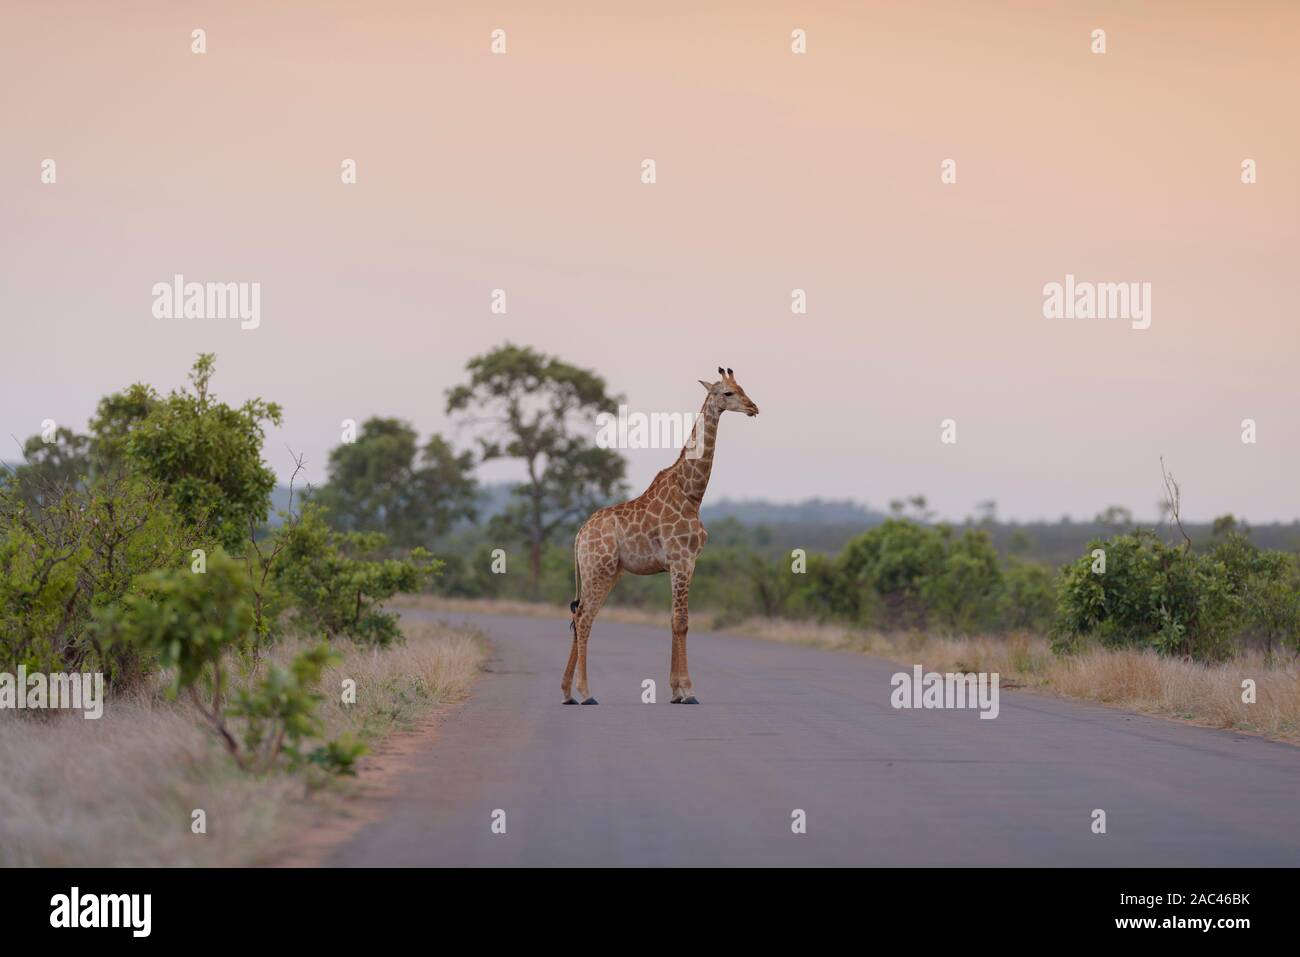 La giraffa nel selvaggio Foto Stock